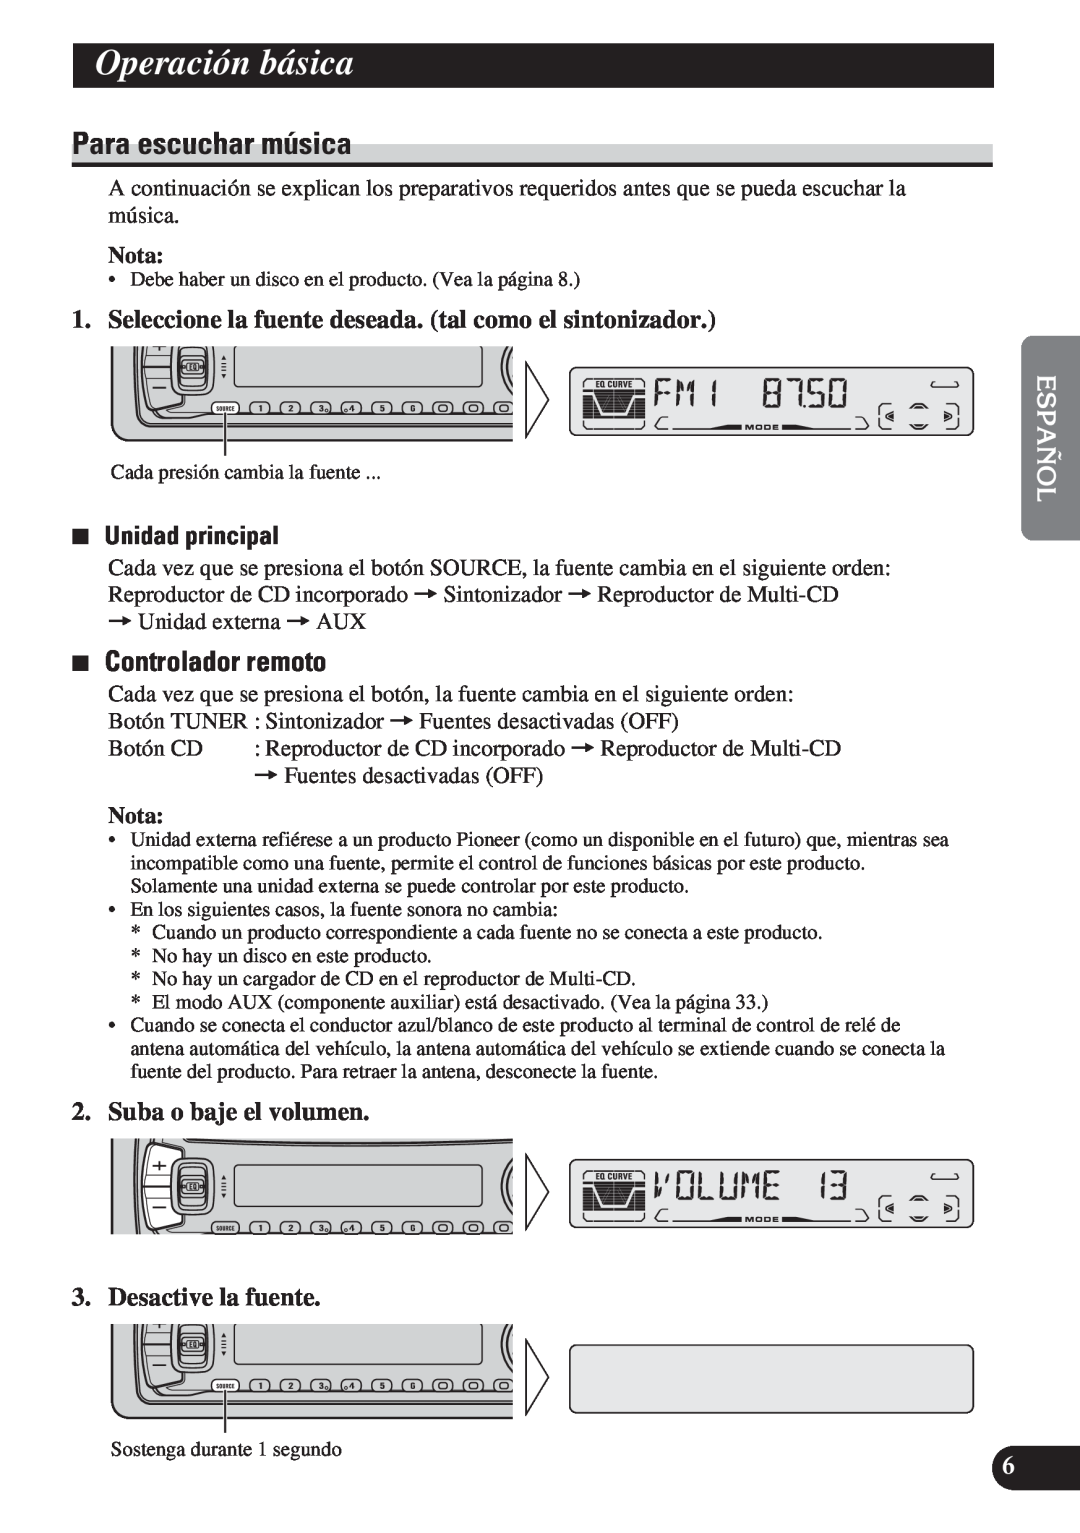 Pioneer DEH-P4150 operation manual Operación básica, Para escuchar música, 7Controlador remoto, 7Unidad principal, Nota 